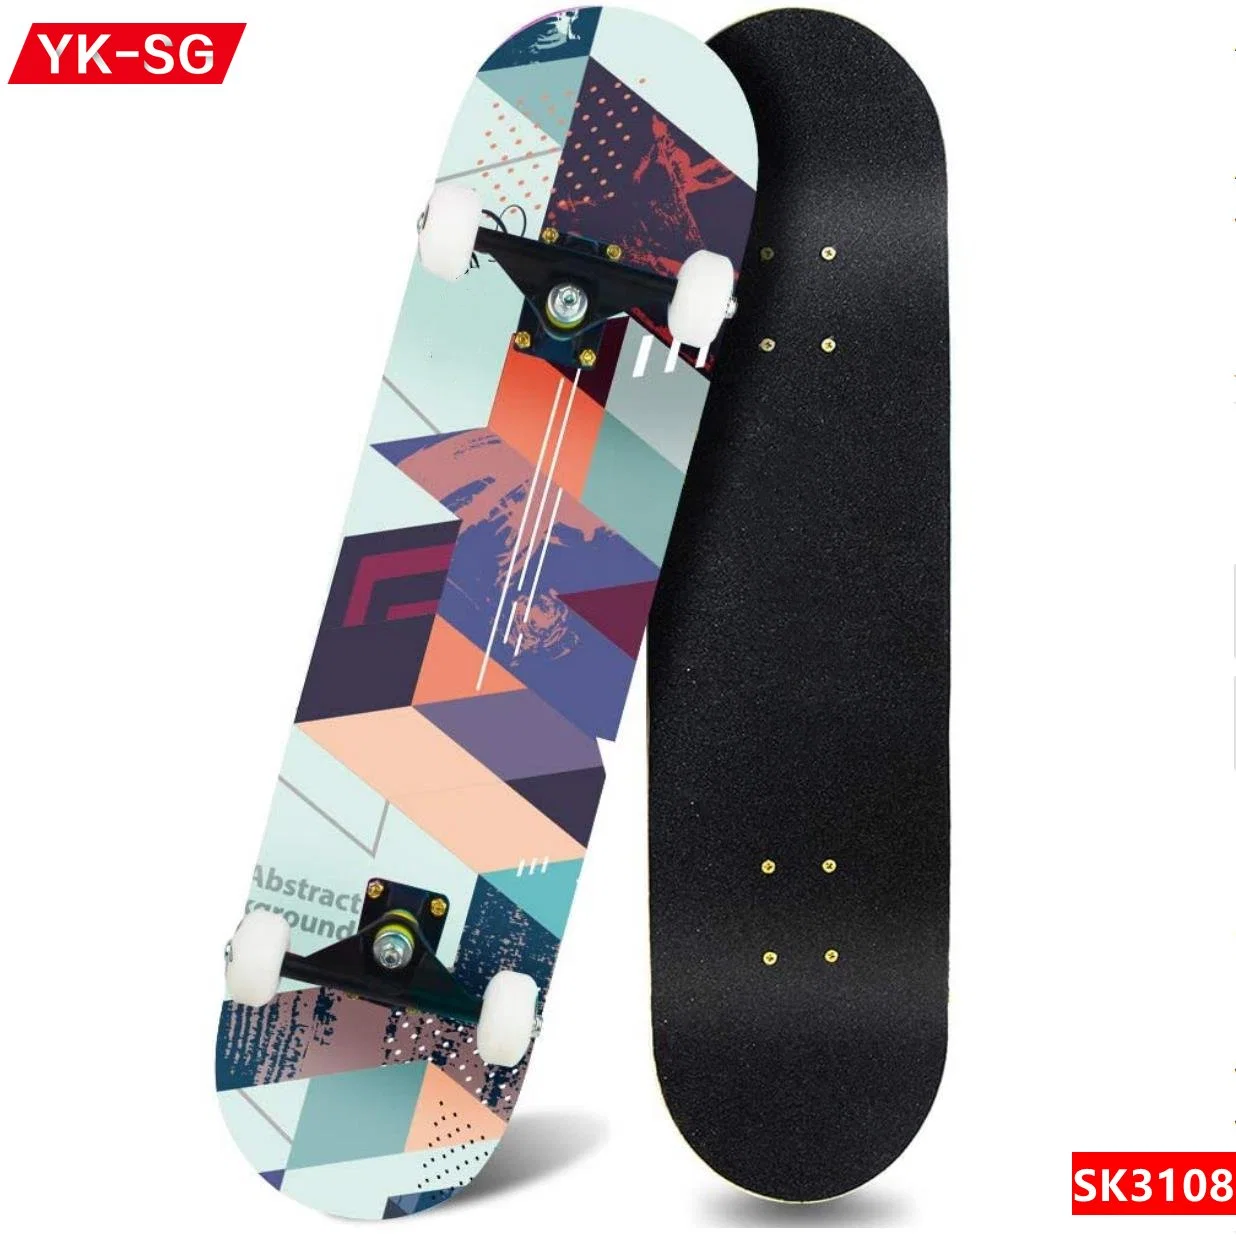 Atacado ou personalizado completo 31polegadas bordo chinês madeira Skateboboard